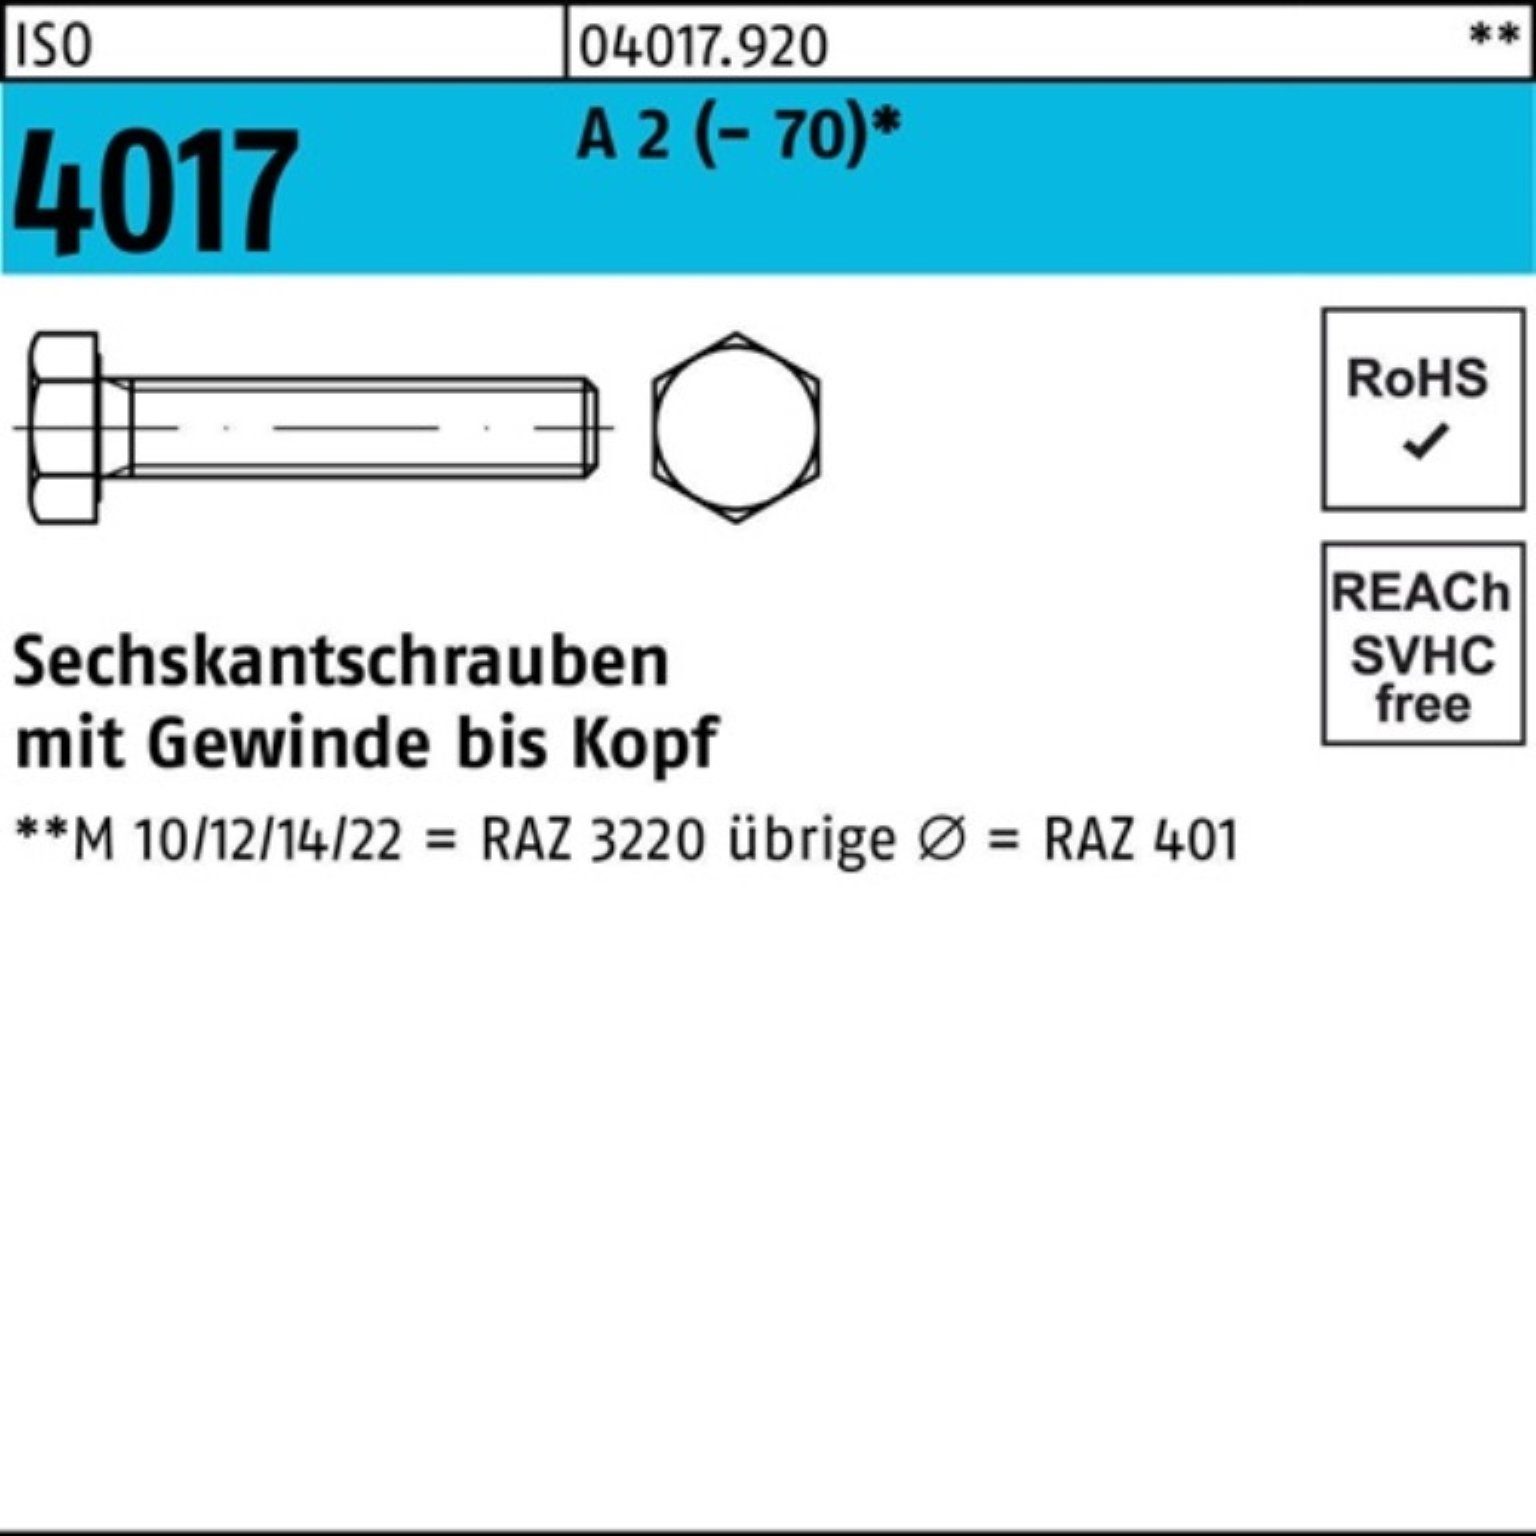 Bufab Sechskantschraube 100er Pack A VG ISO M24x 4017 (70) 2 Sechskantschraube Stück 1 160